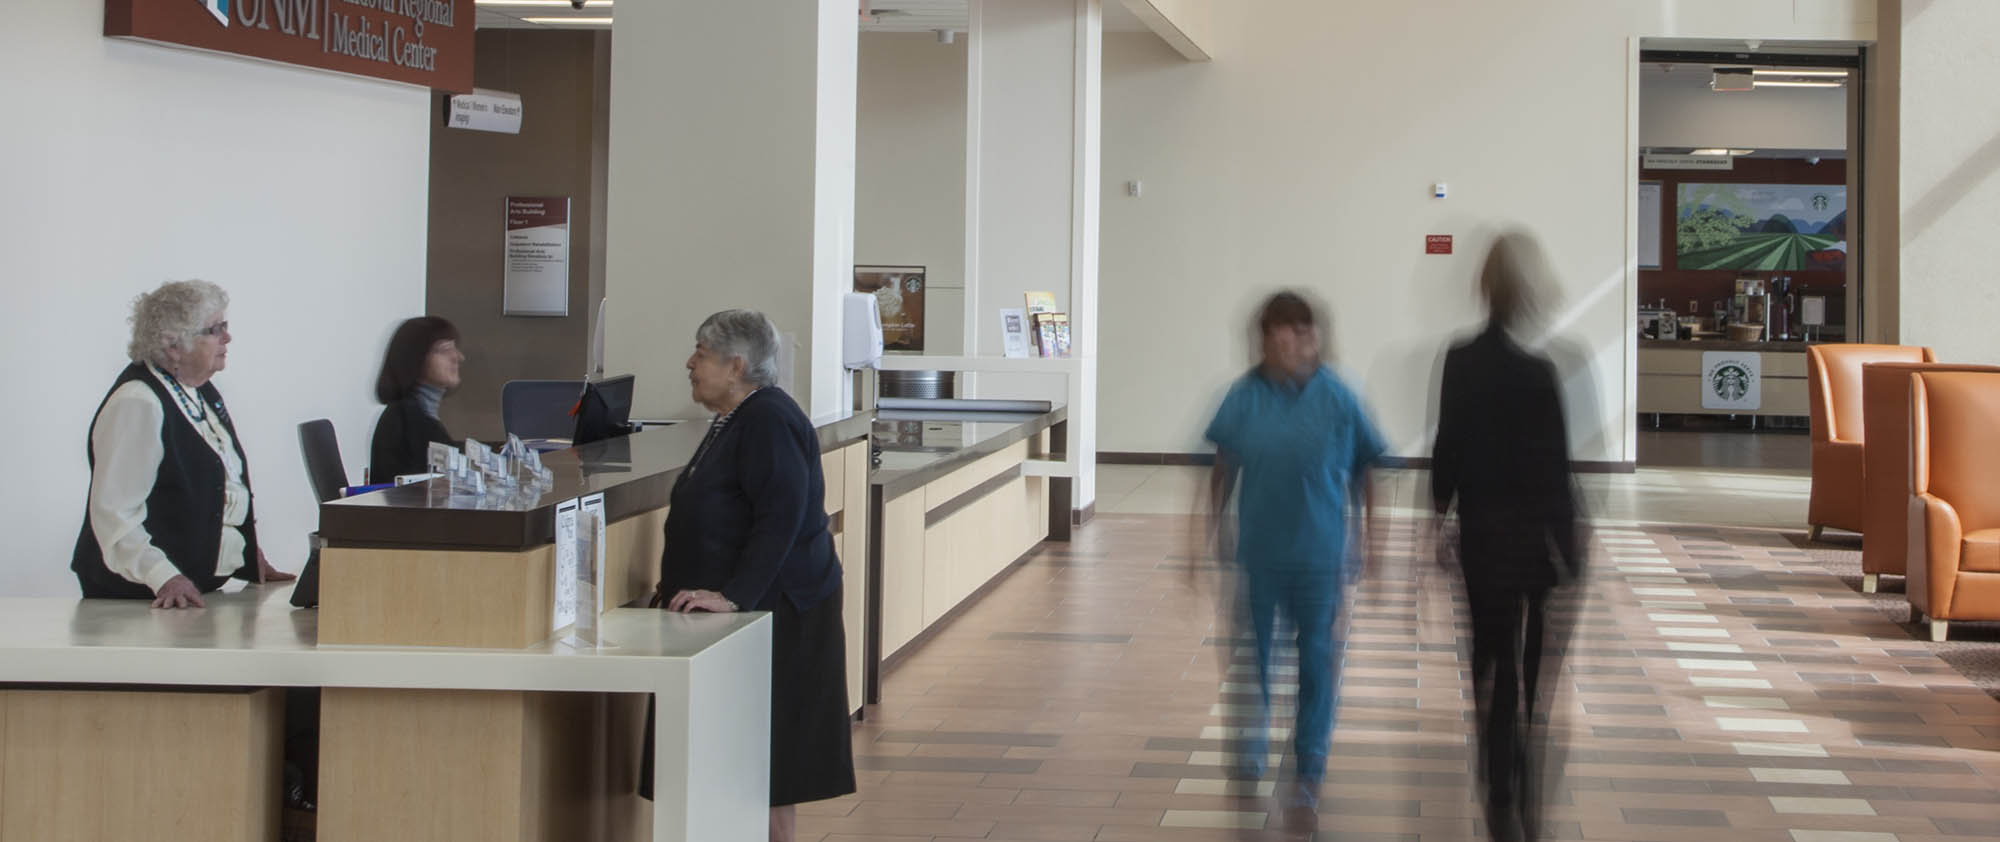 Sandoval Regional Medical Center timelapsed lobby